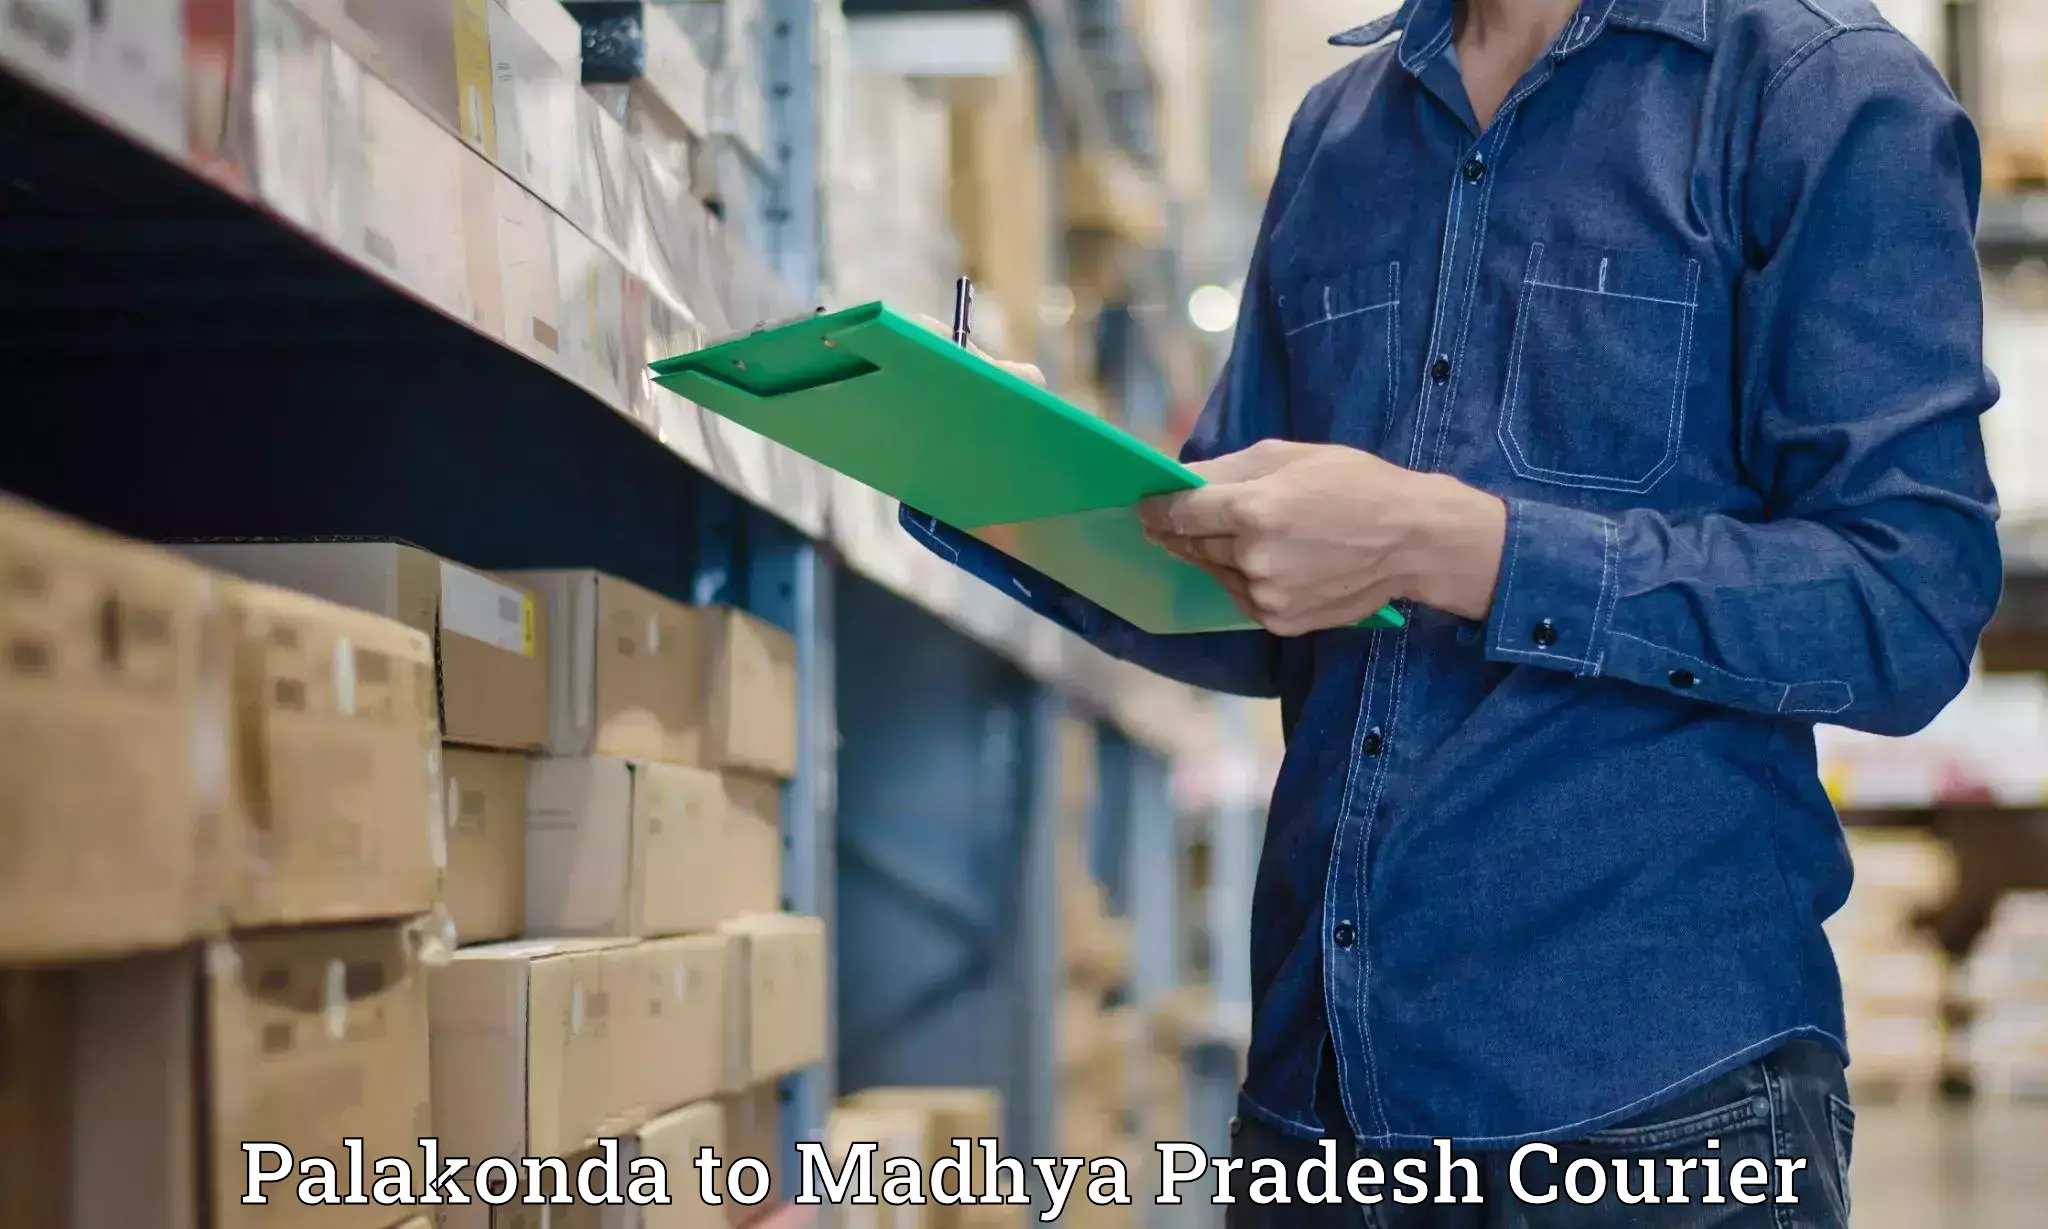 Special handling courier Palakonda to Garh Rewa